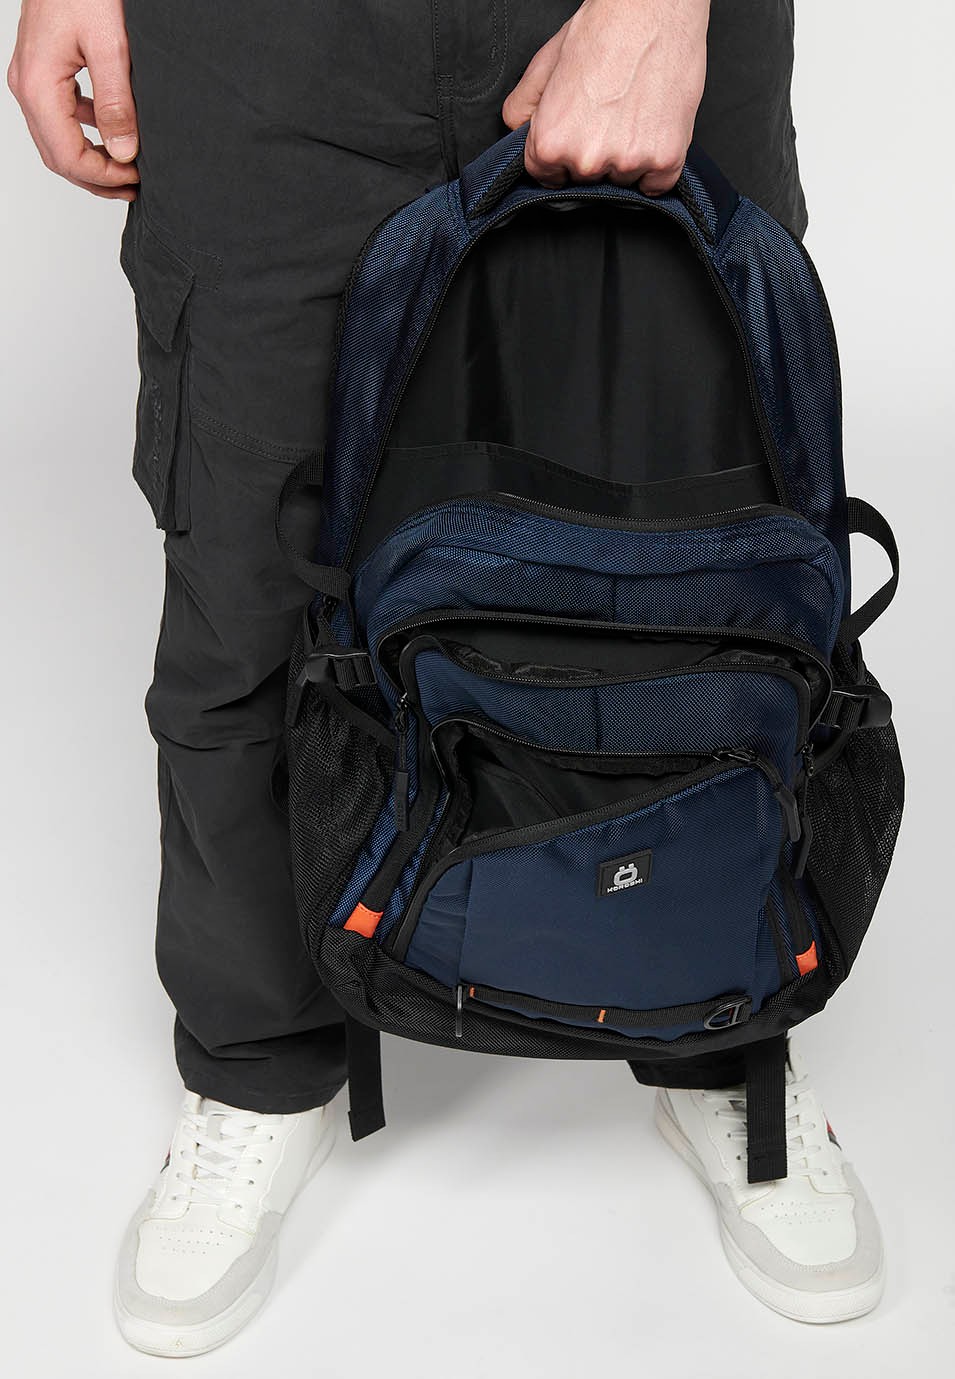 Koröshi-Rucksack mit drei Reißverschlussfächern, eines für einen Laptop, und marineblauen Innentaschen 8